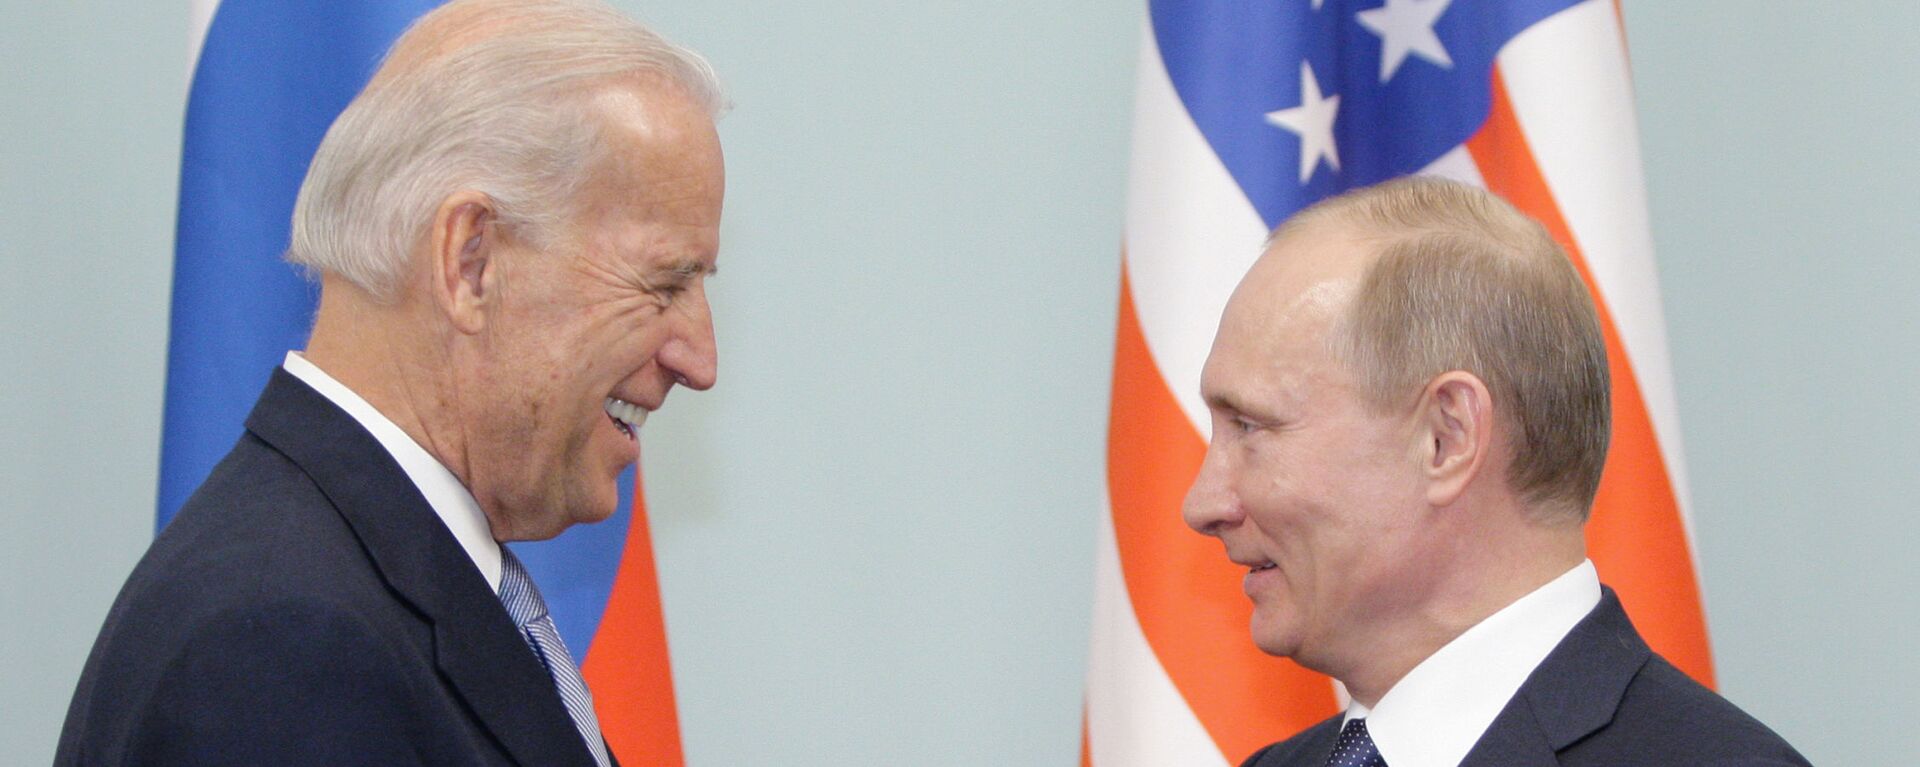 Cuộc gặp giữa thủ tướng Nga Vladimir Putin và phó tổng thống Hoa Kỳ Joe Biden, năm 2011 - Sputnik Việt Nam, 1920, 31.05.2021